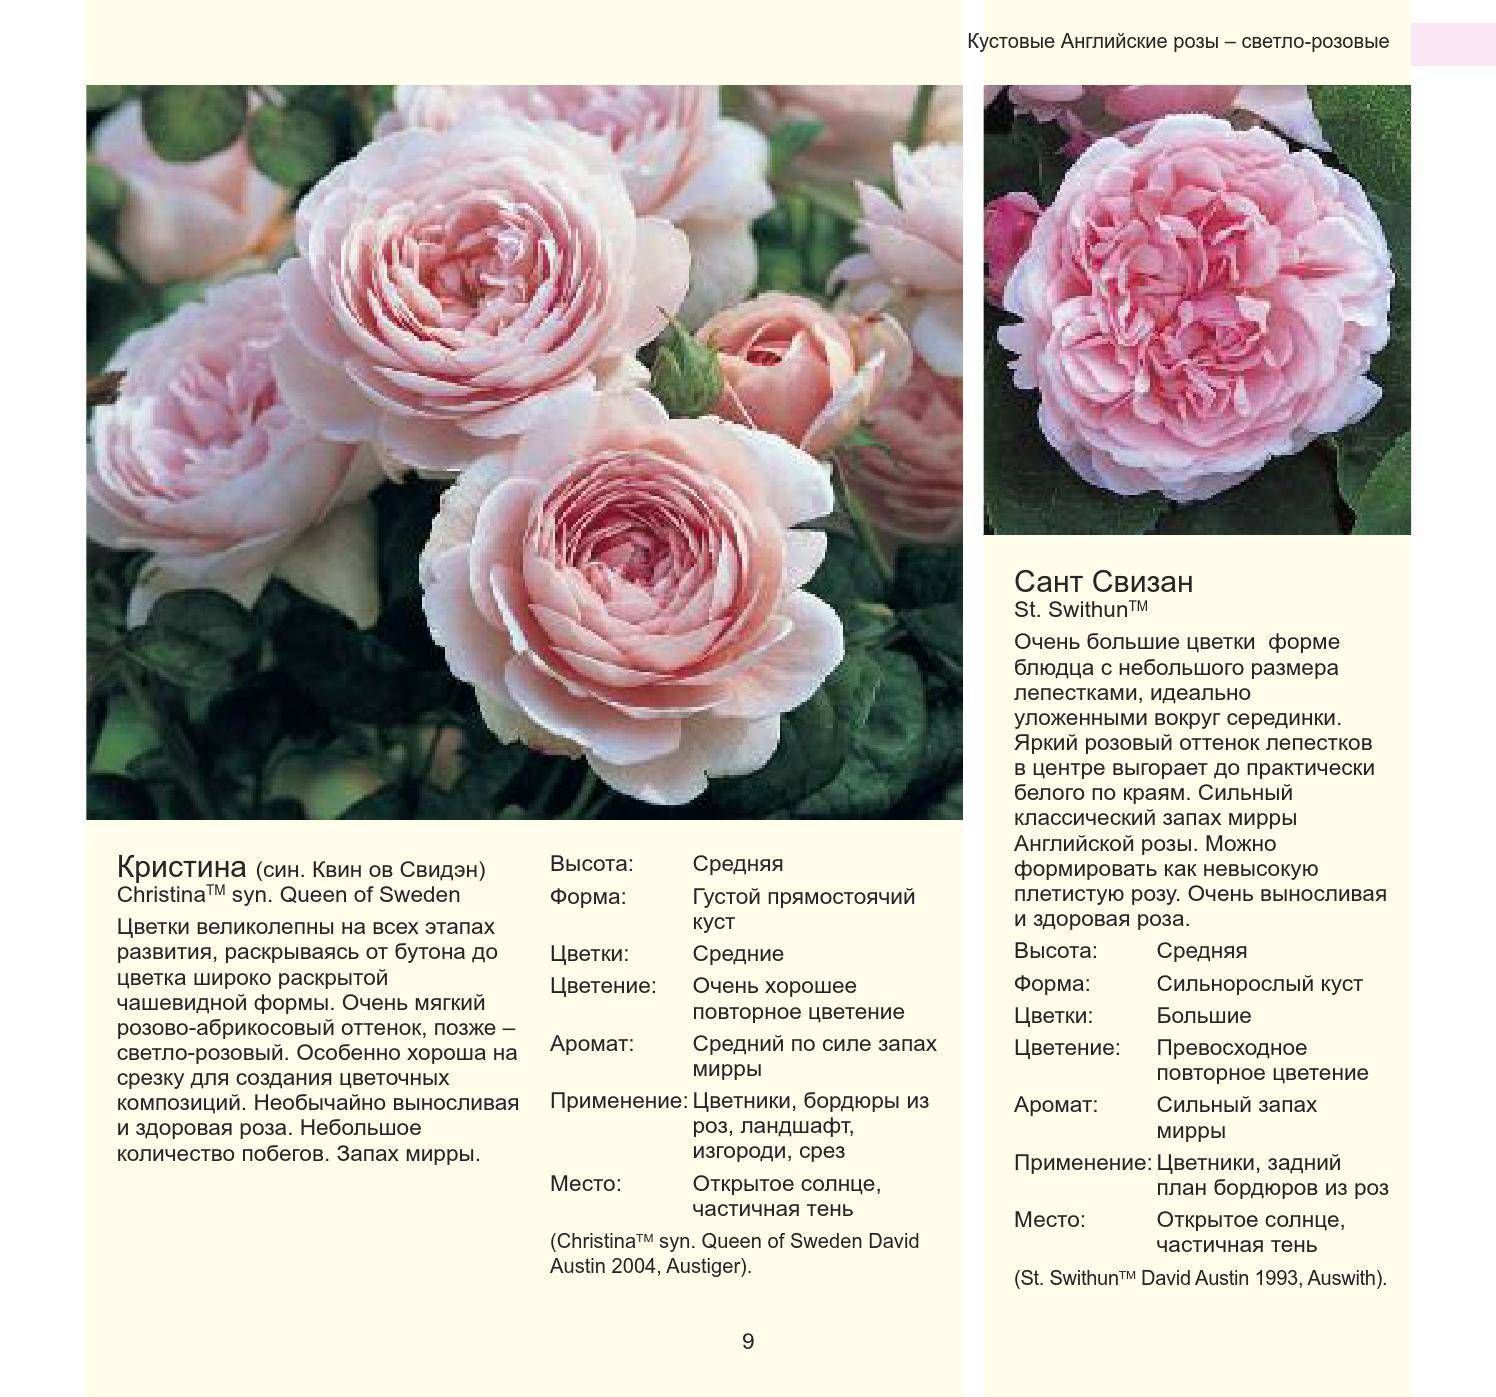 Роза джульетта (juliet): фото и описание, отзывы об английском цветке, видео